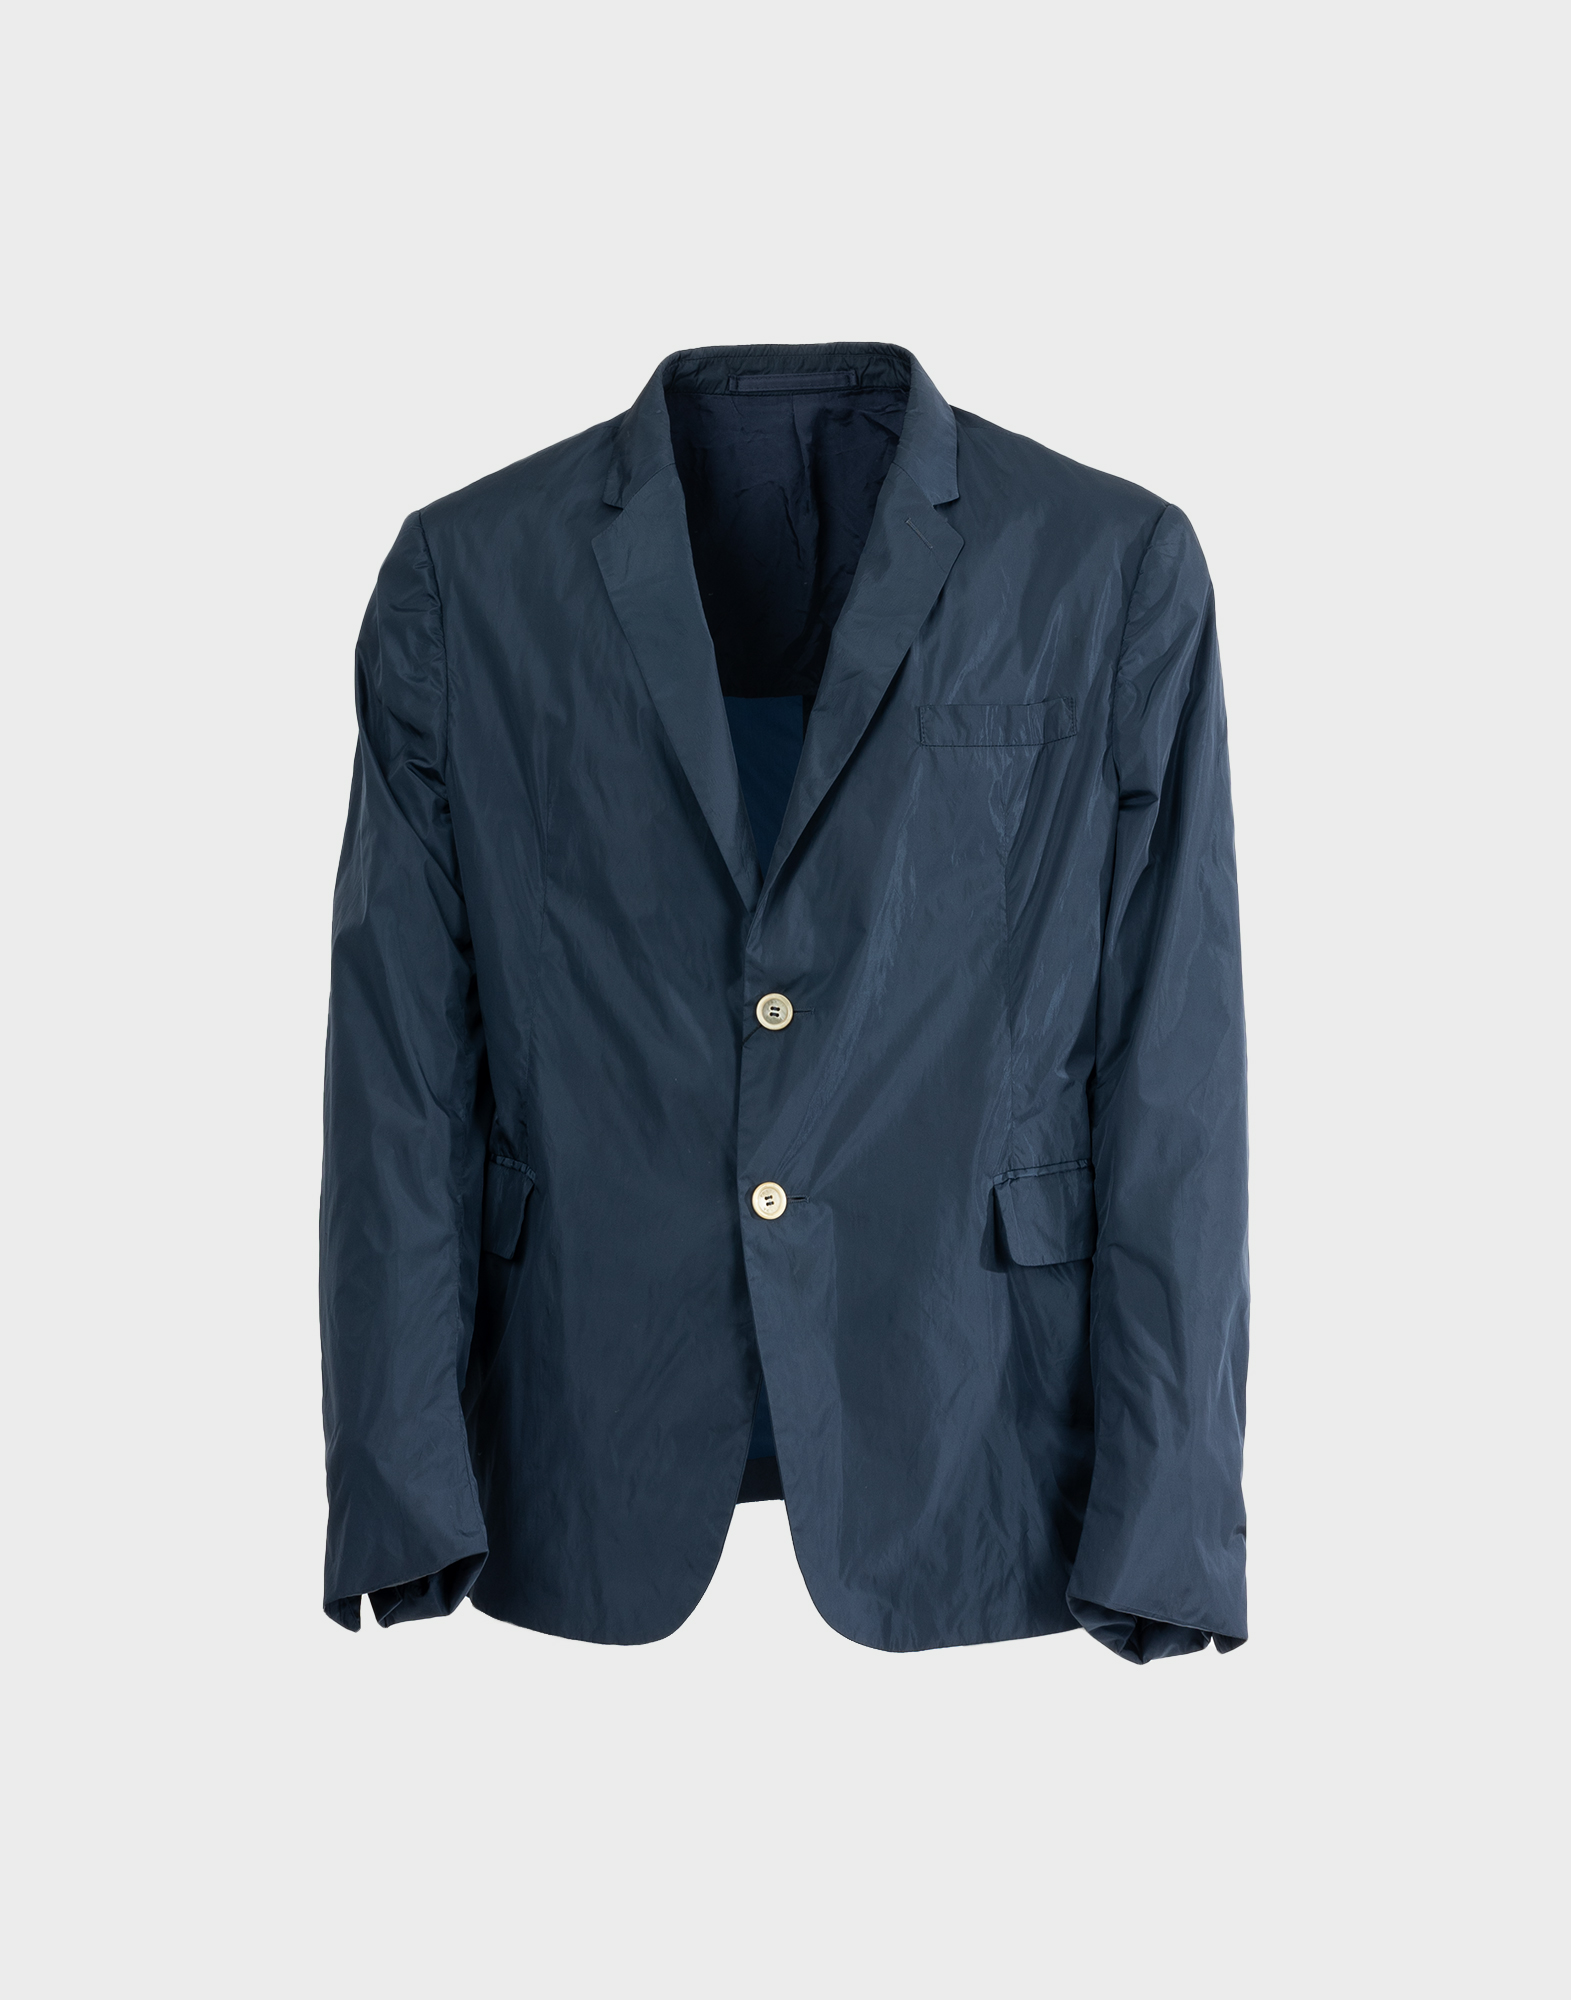 prada blue men's nylon jacket two button closure